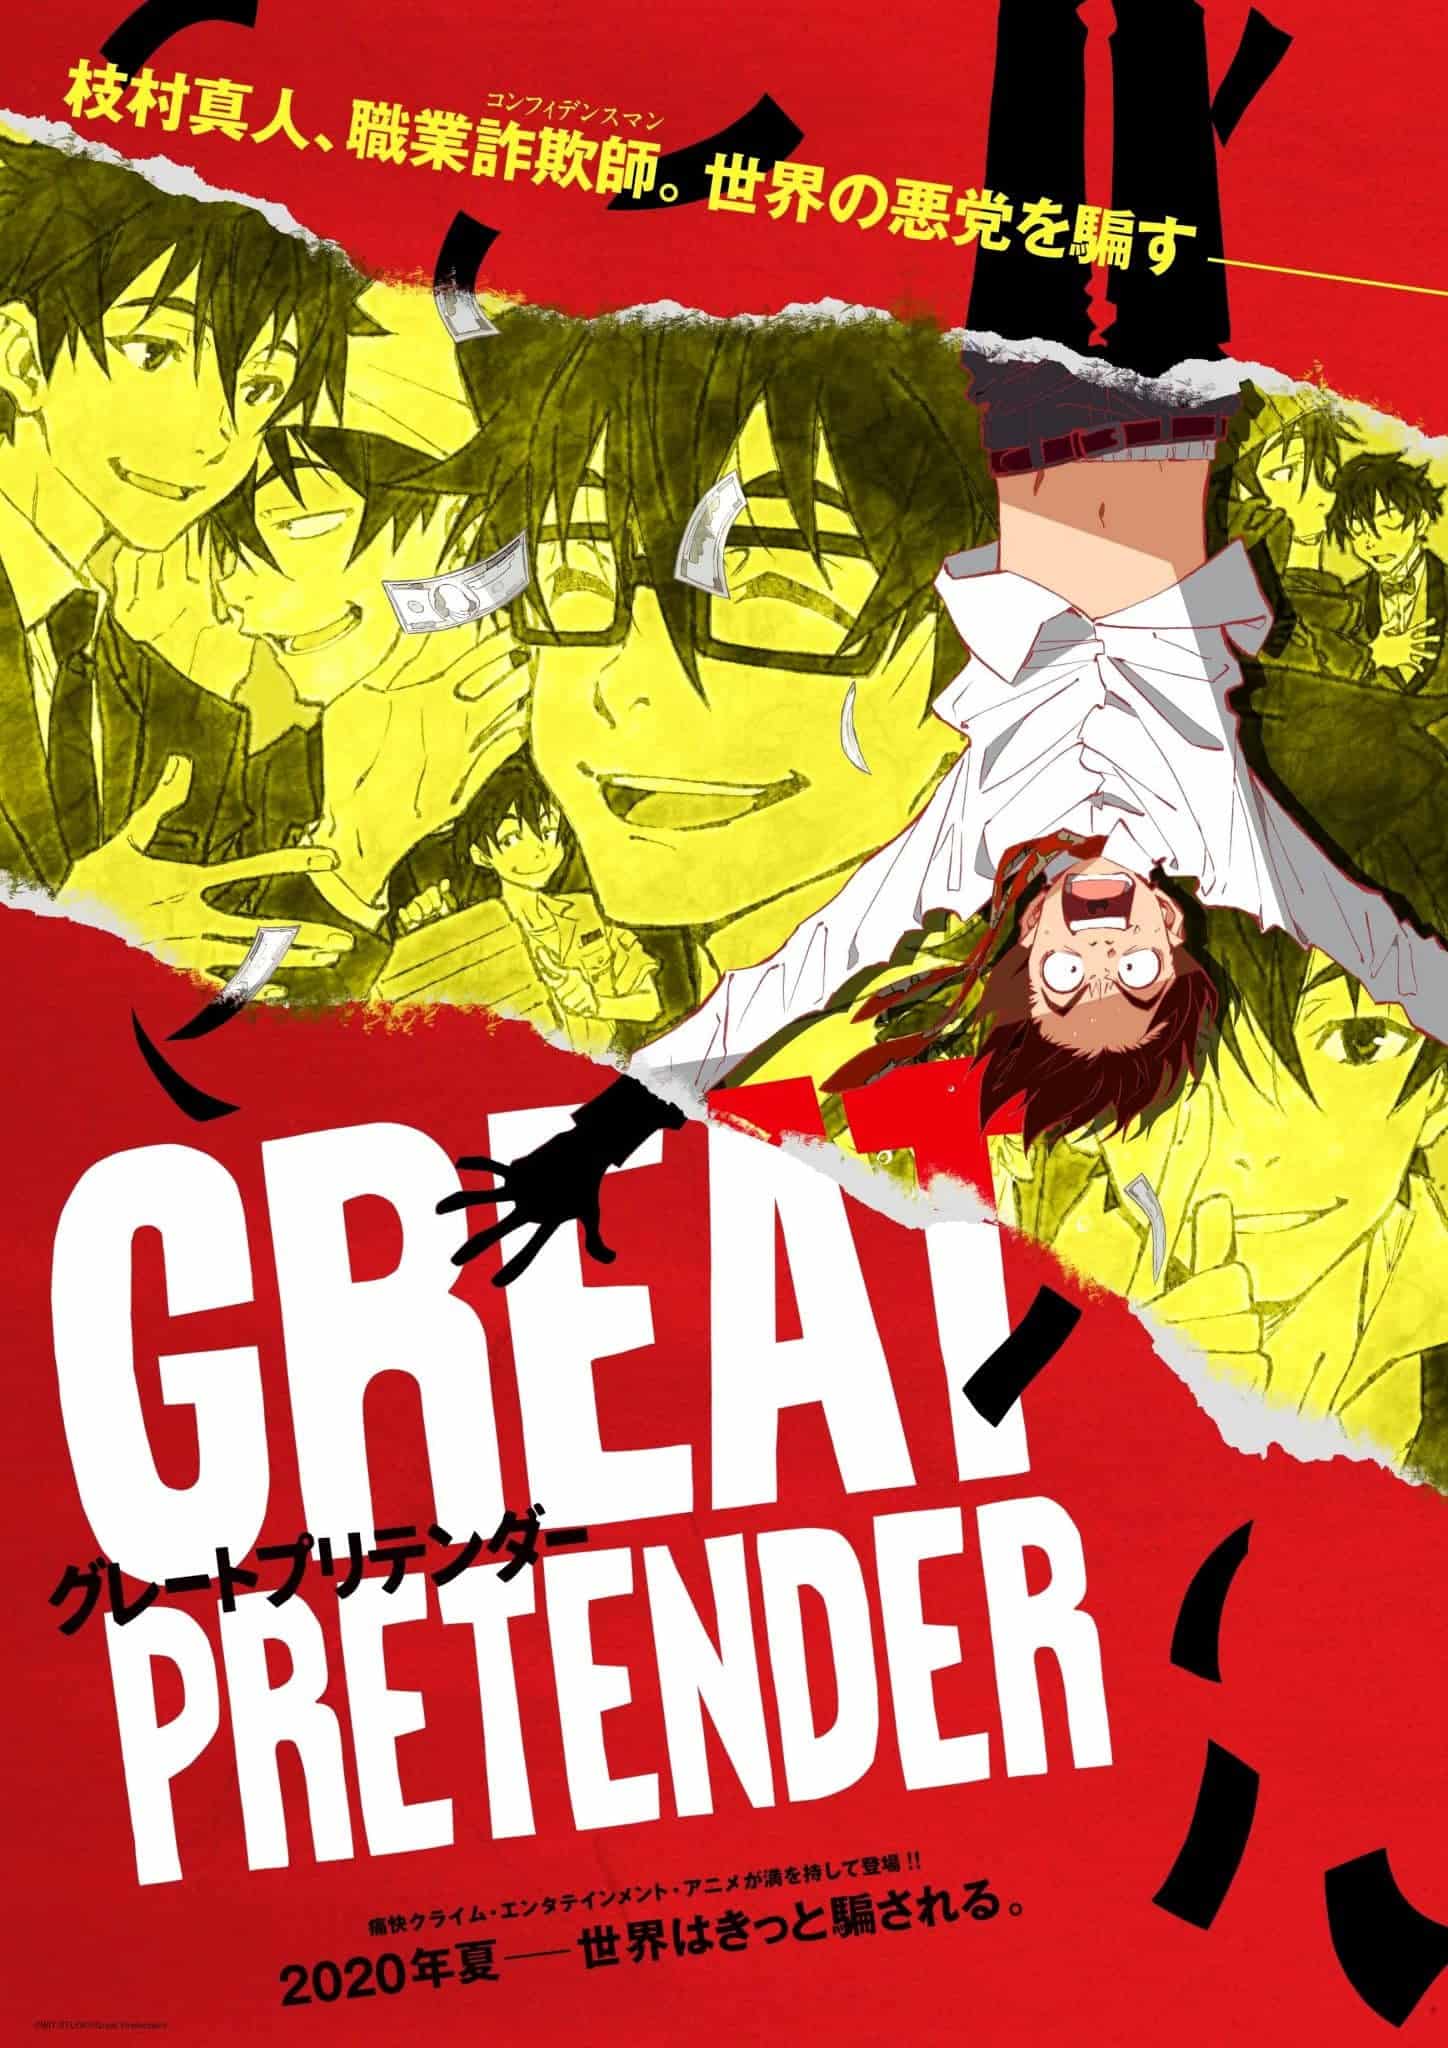 Annonce de Great Pretender parmi les meilleurs animes de 2020